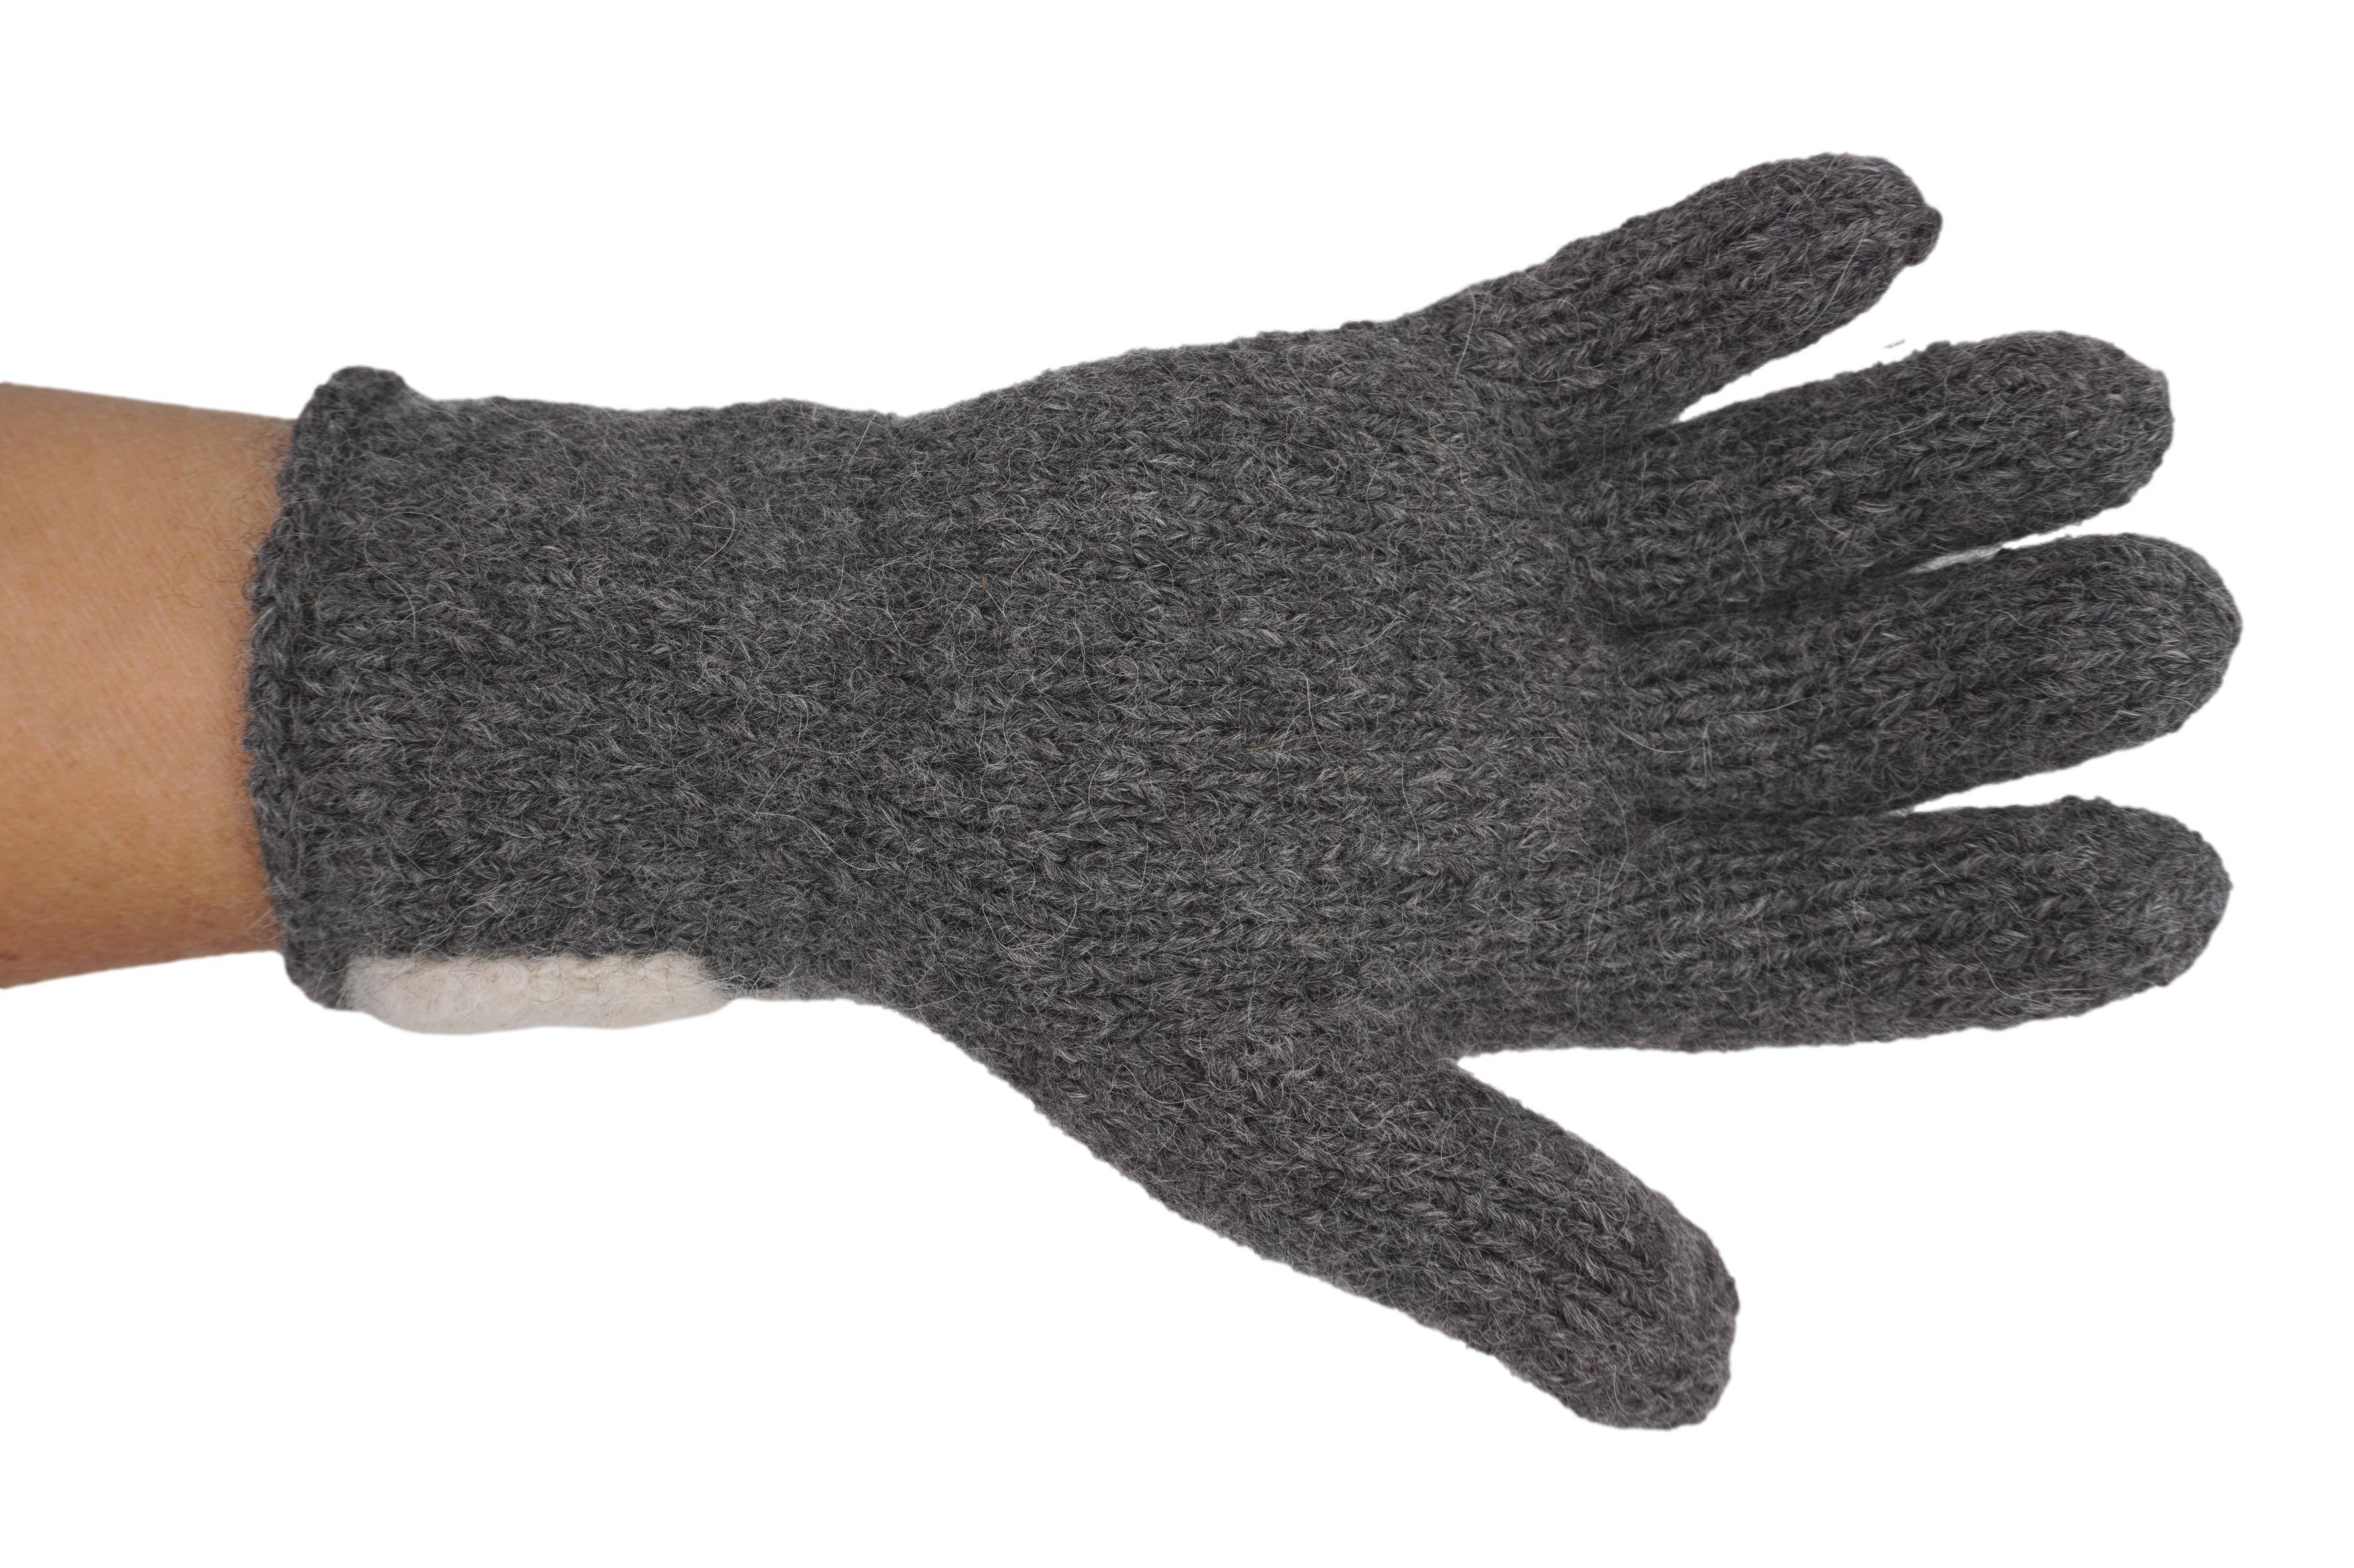 Fingerhandschuhe mit Boucle - Einsatz aus Baby-Alpaka-Wolle Farbe: Anthrazit-Weiß, Grau-Beige